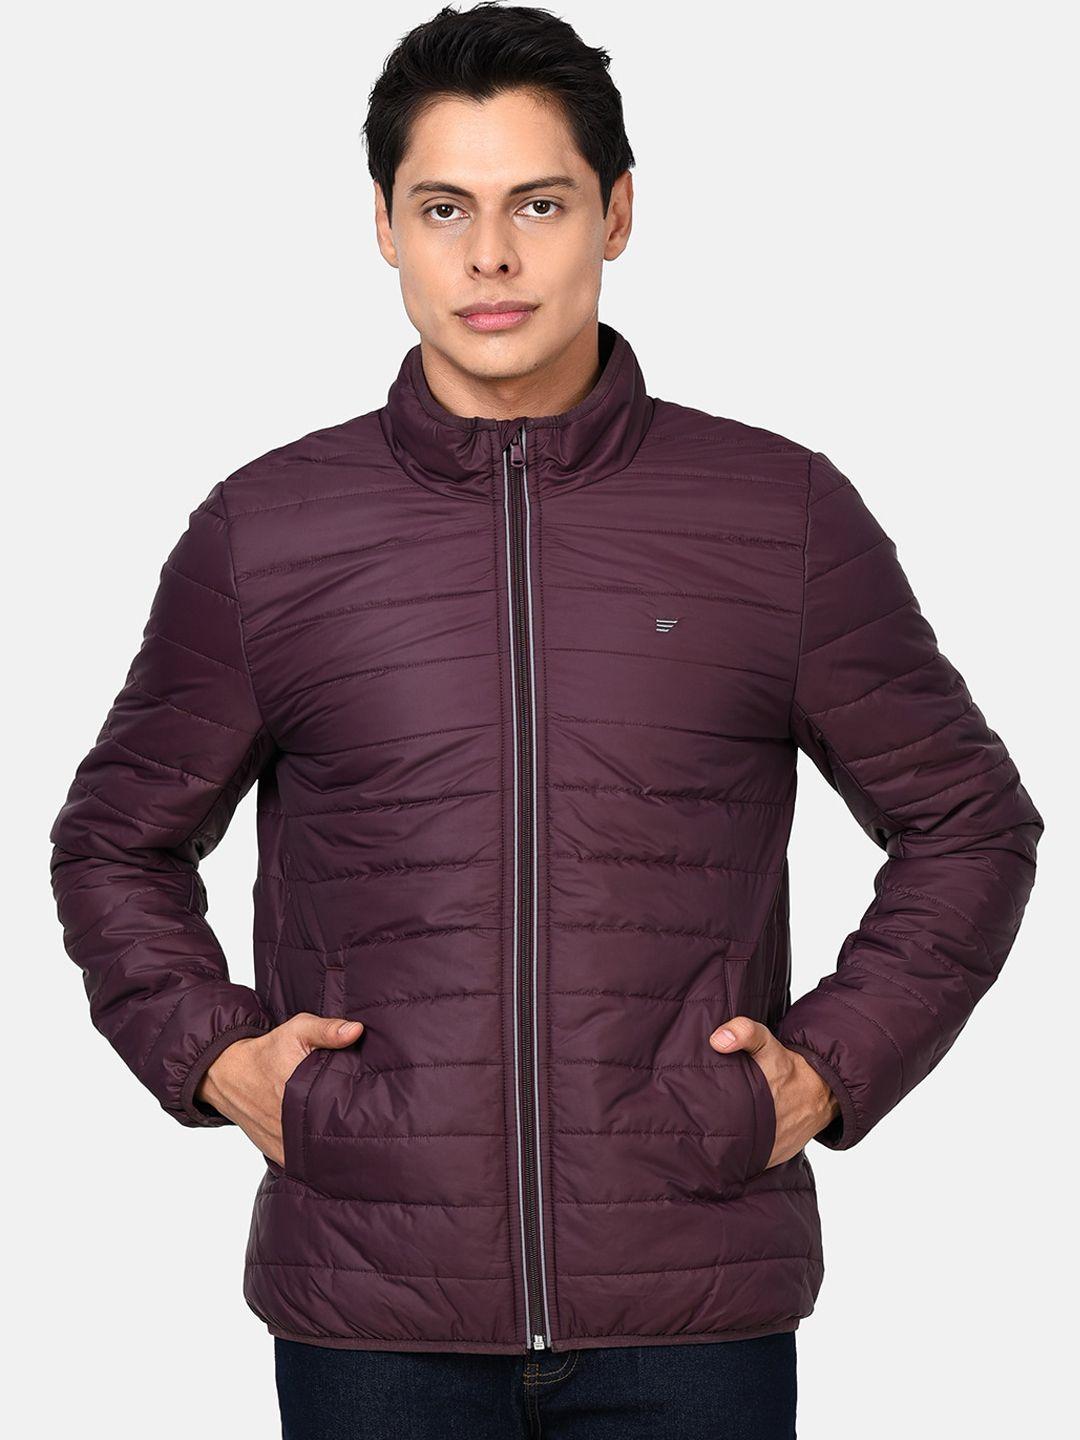 t-base-men-burgundy-lightweight-puffer-jacket